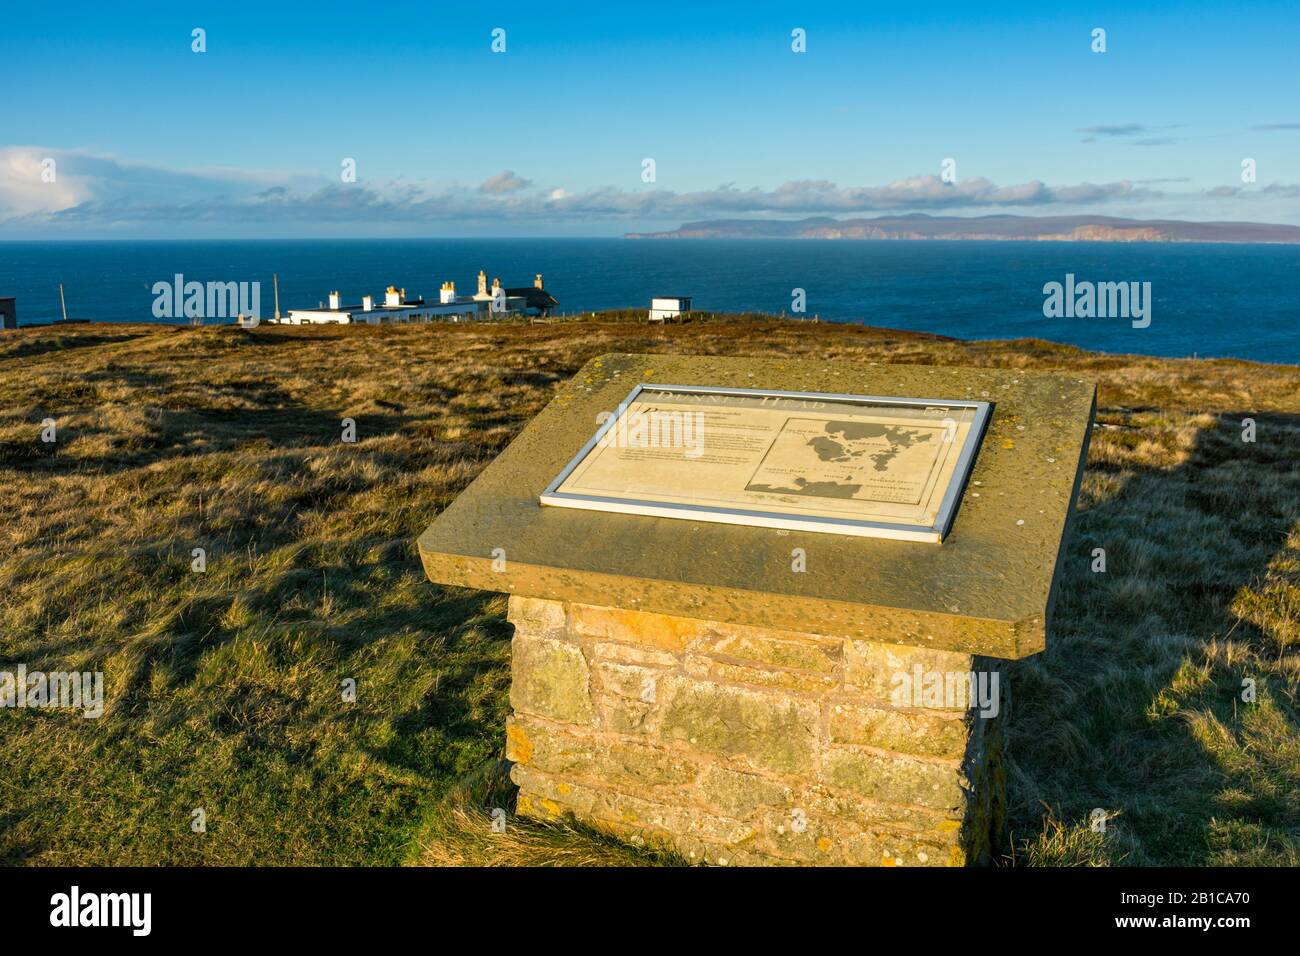 Conseil d'information au sommet de Dunnet Head, point le plus au nord du continent britannique. Caithness, Écosse, Royaume-Uni. Hoy, Orkney, à la distance. Banque D'Images